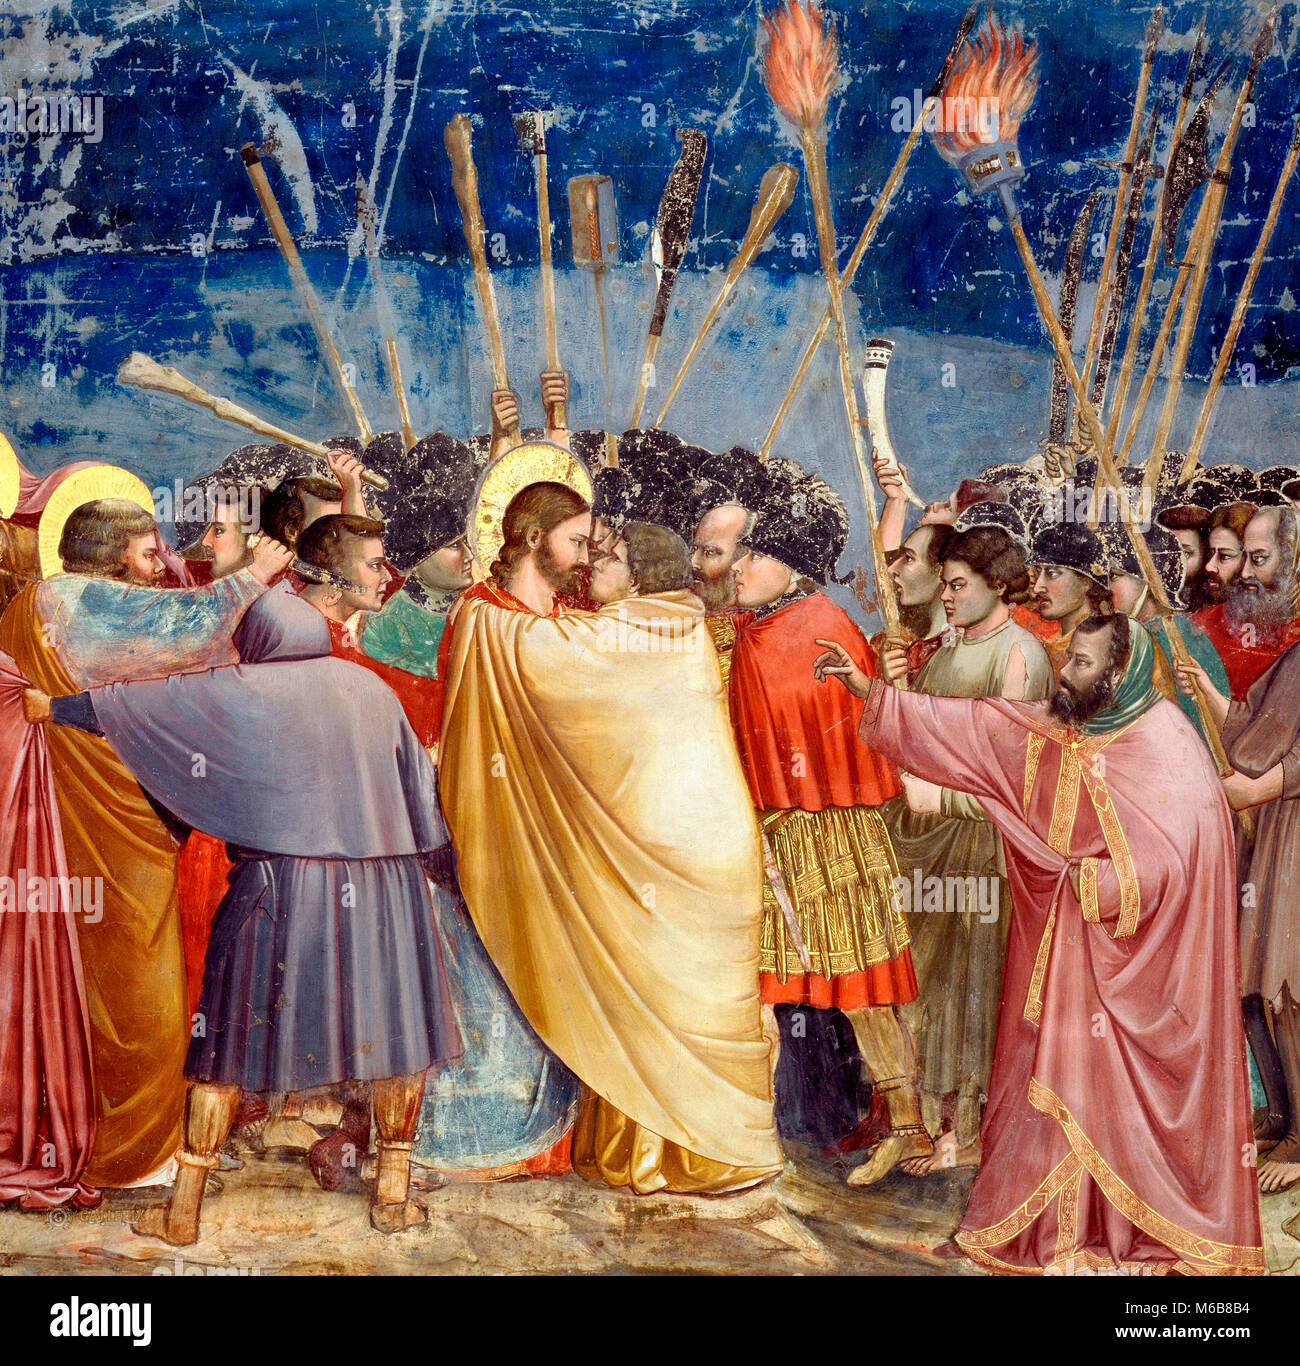 Kuß des Judas - Die Jünger auf dem linken, die Wunden der Soldat mit seinem Messer, ist St. Peter. Giotto di Bondone, ca. 1305 Stockfoto